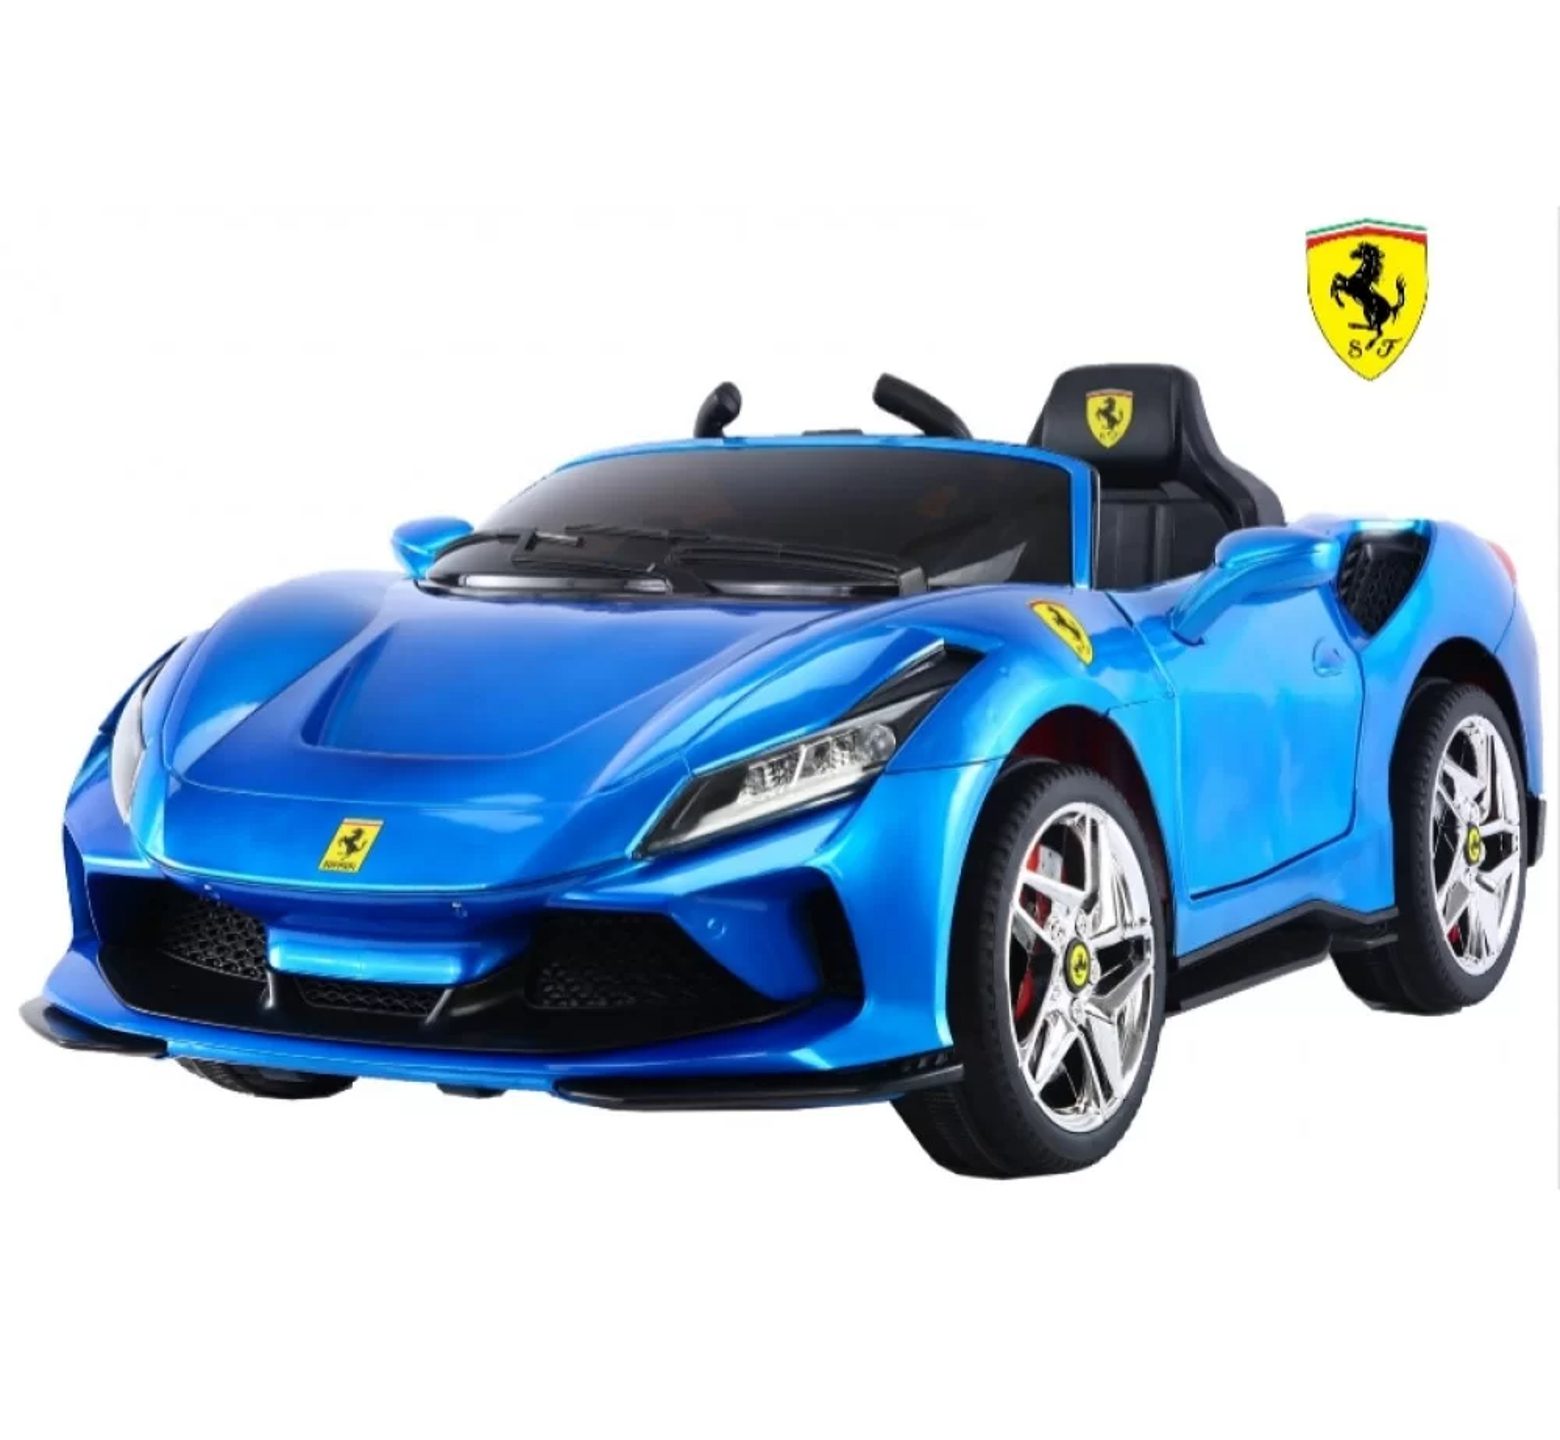 Ηλεκτροκίνητο Παιδικό Αυτοκίνητο 12V Licensed Ferrari με 4 μοτέρ σε μπλε χρώμα